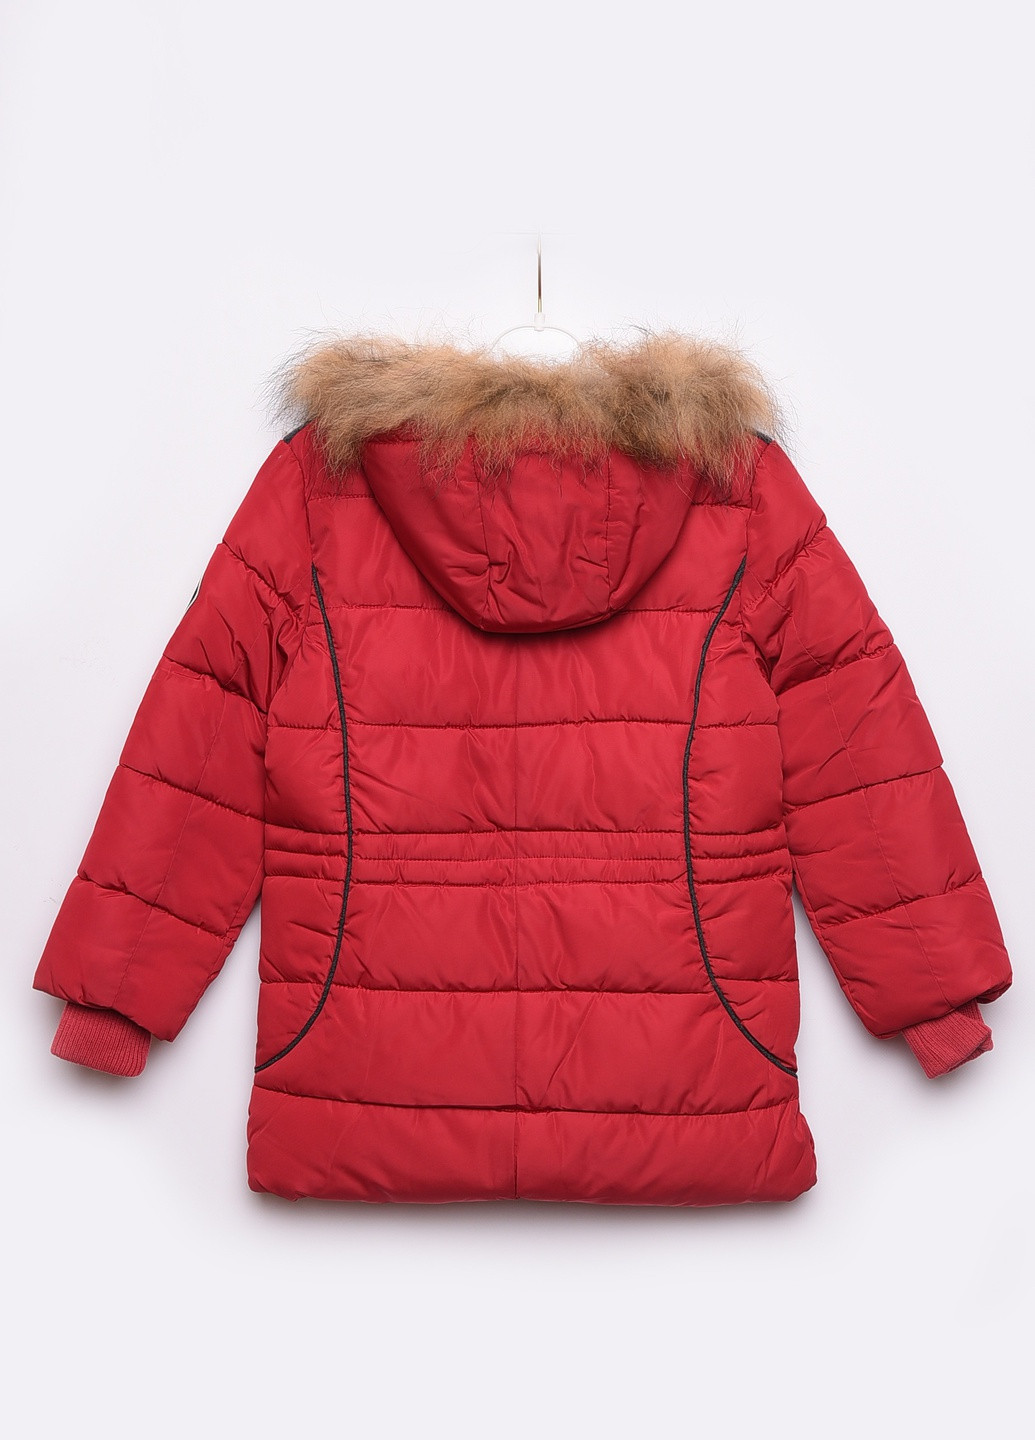 Бордовая зимняя куртка детская еврозима бордовая с капюшоном Let's Shop